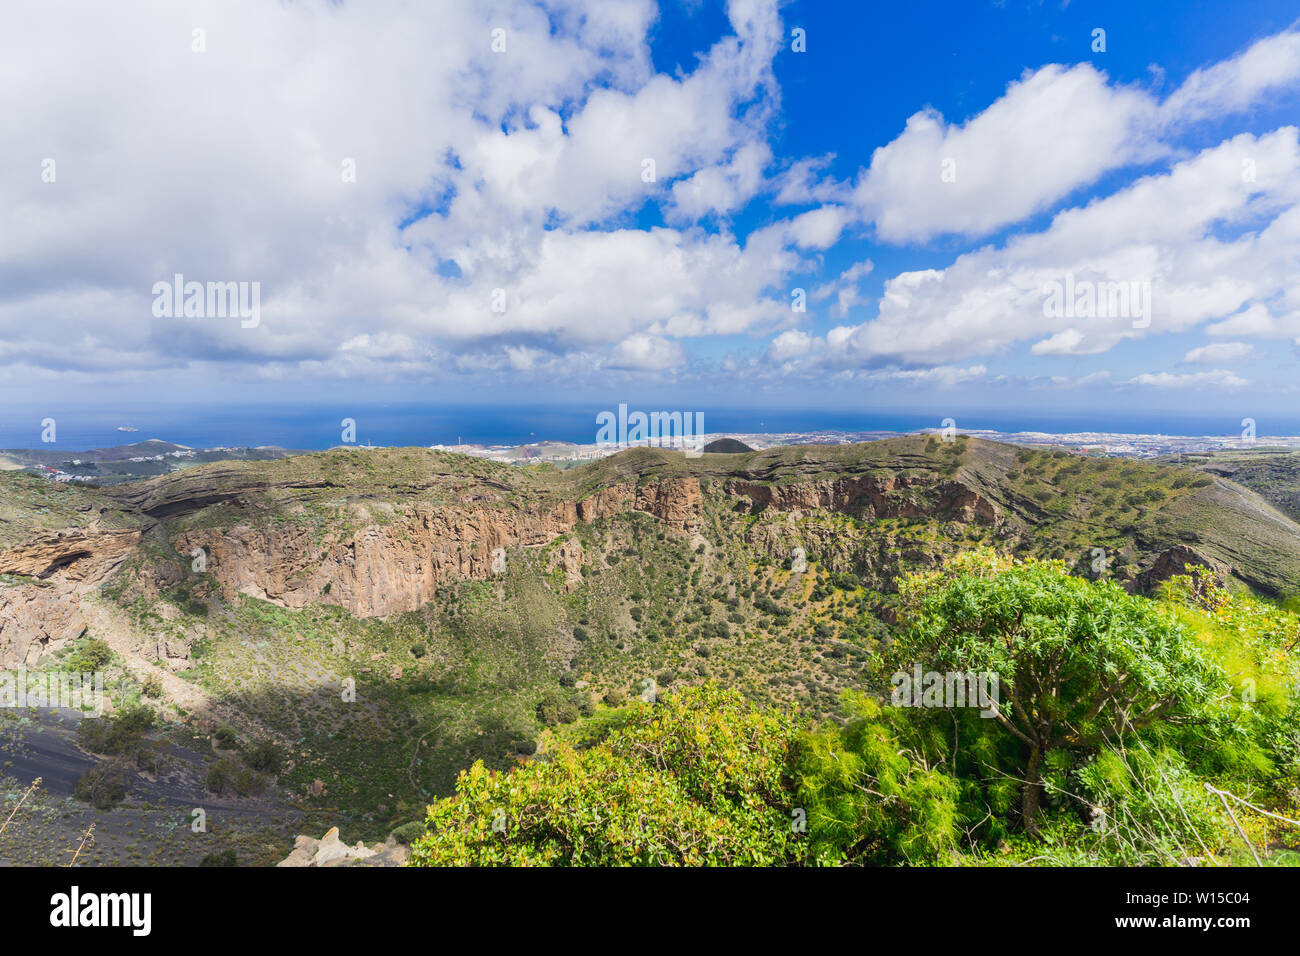 La nature et le paysage des îles Canaries - Montagnes de Gran Canaria Banque D'Images